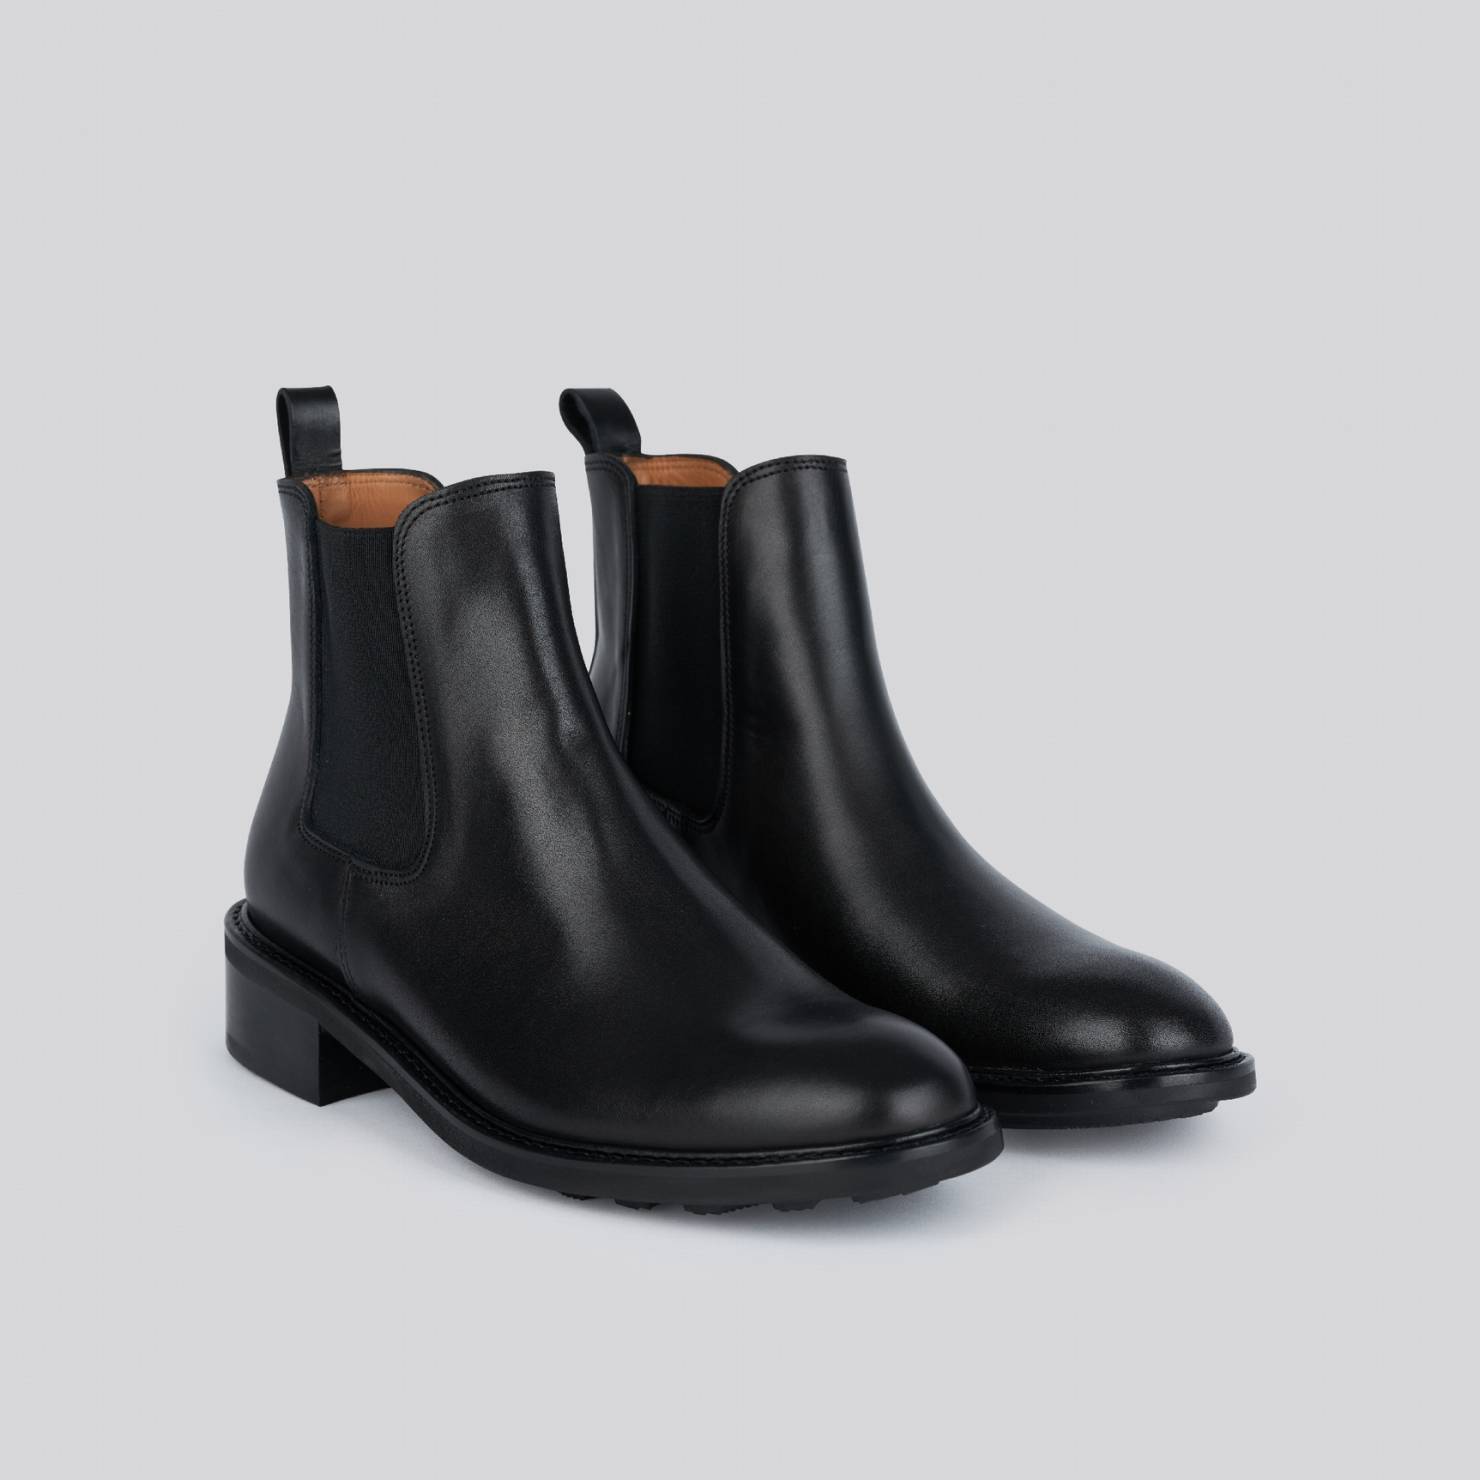 Anthology Paris | boots for women - 7226 SH Paolo Leather | Noir | kapok